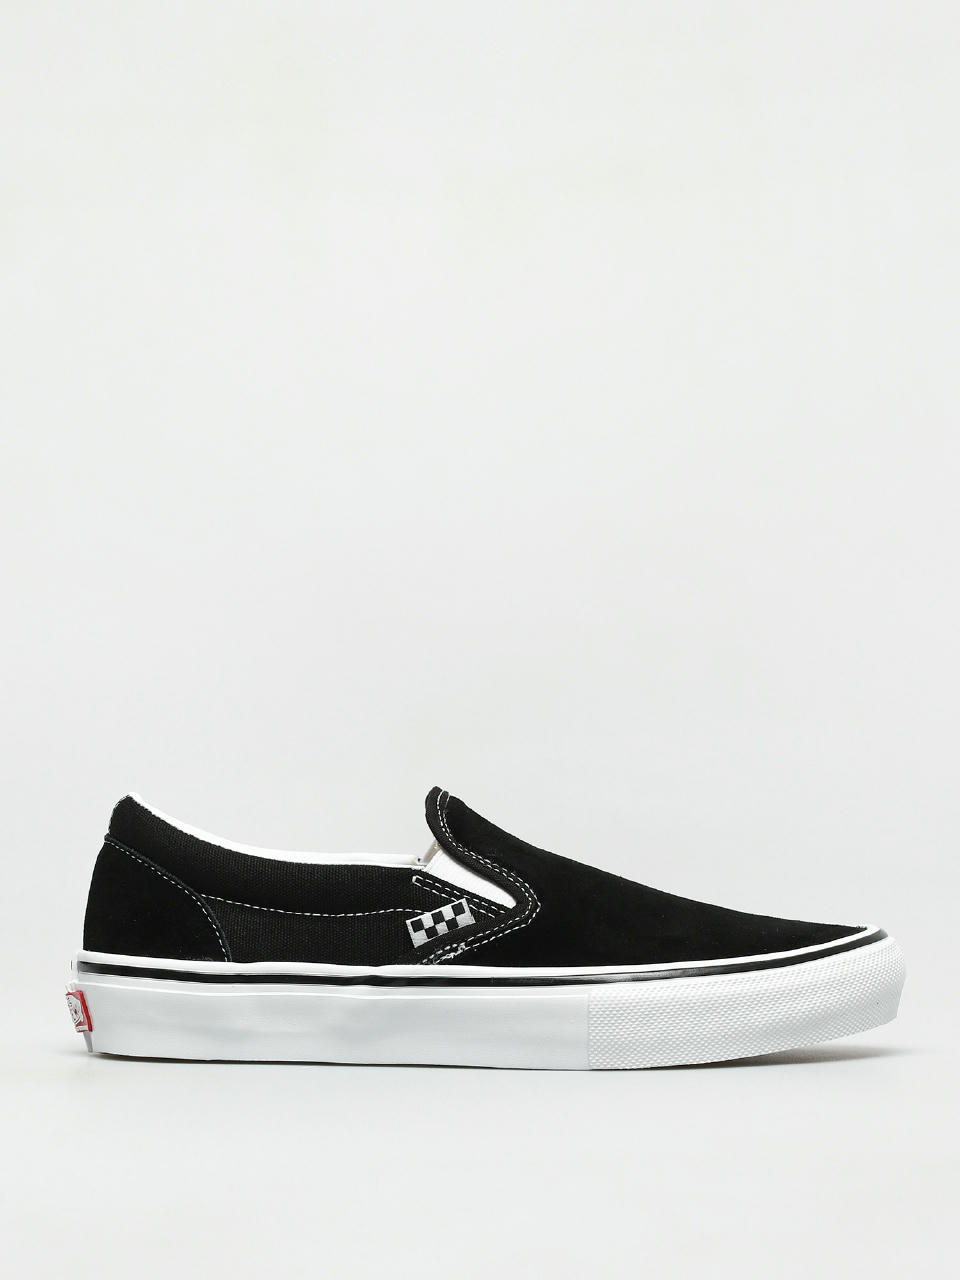 Underholde Par Fjern Vans Skate Slip On Shoes (black/white)